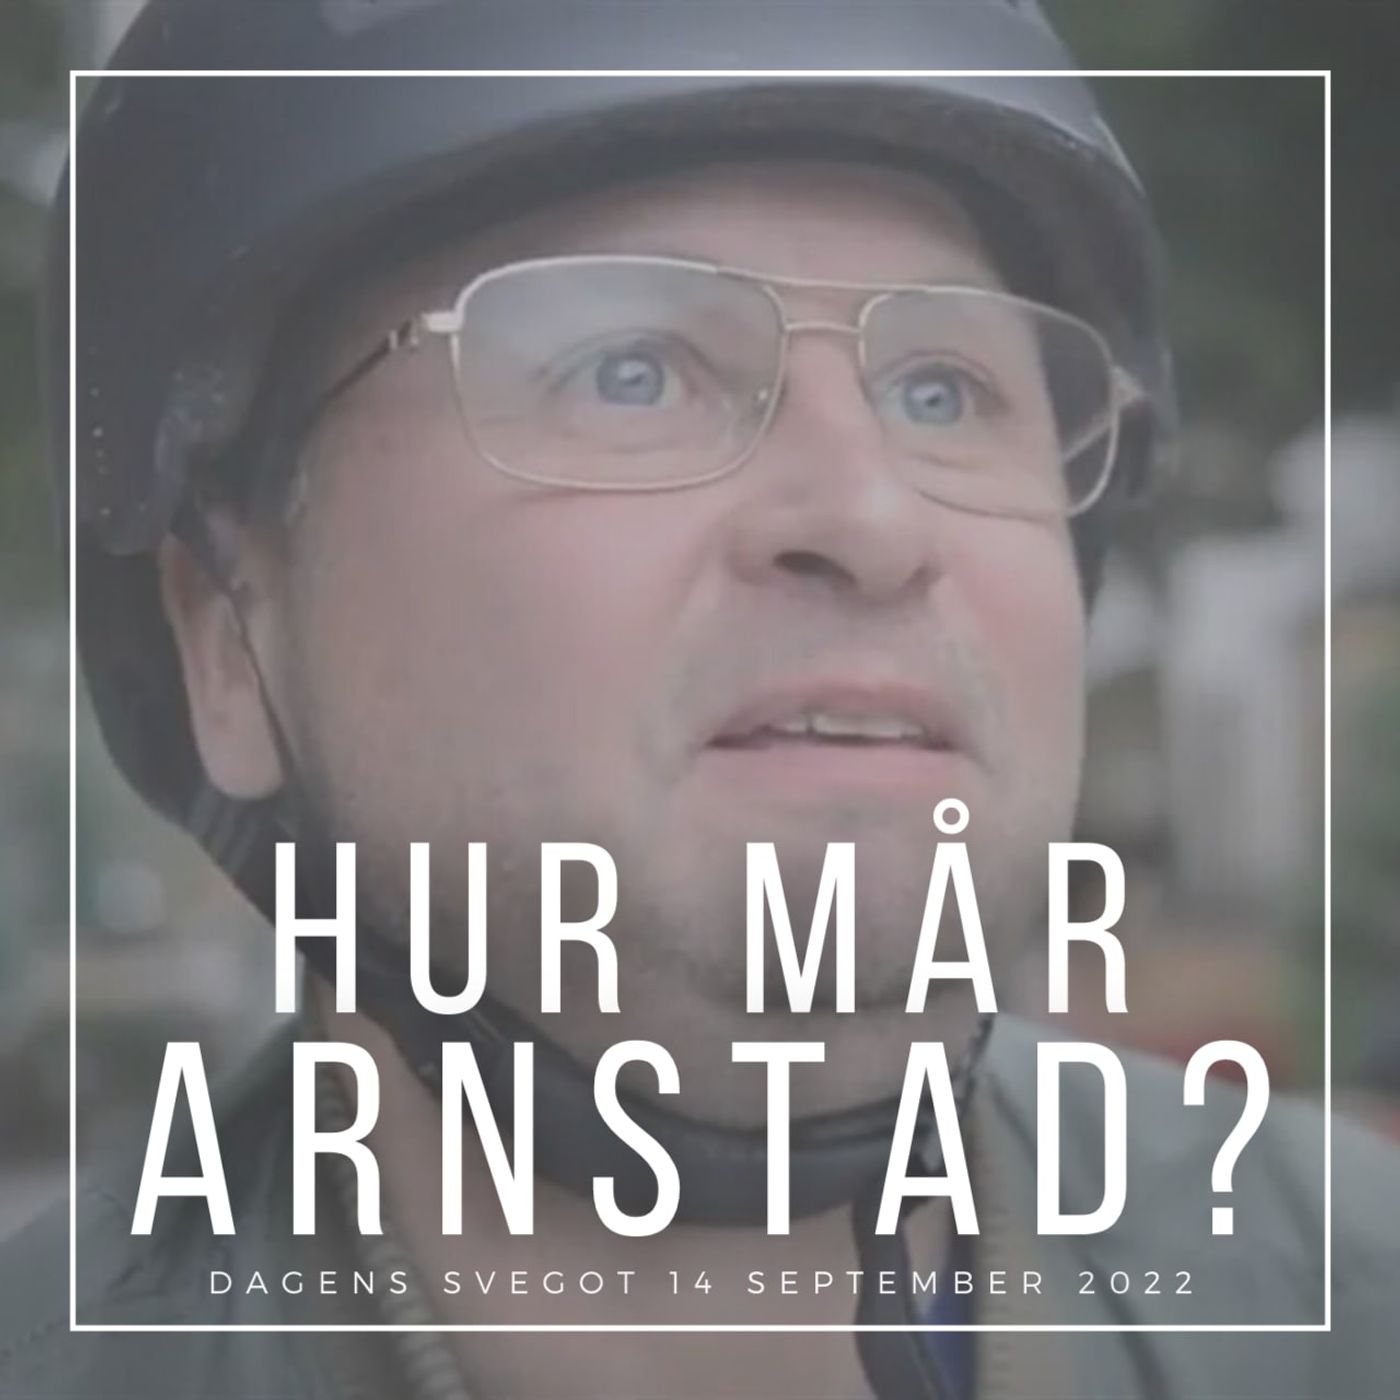 Hur mår Henrik Arnstad?